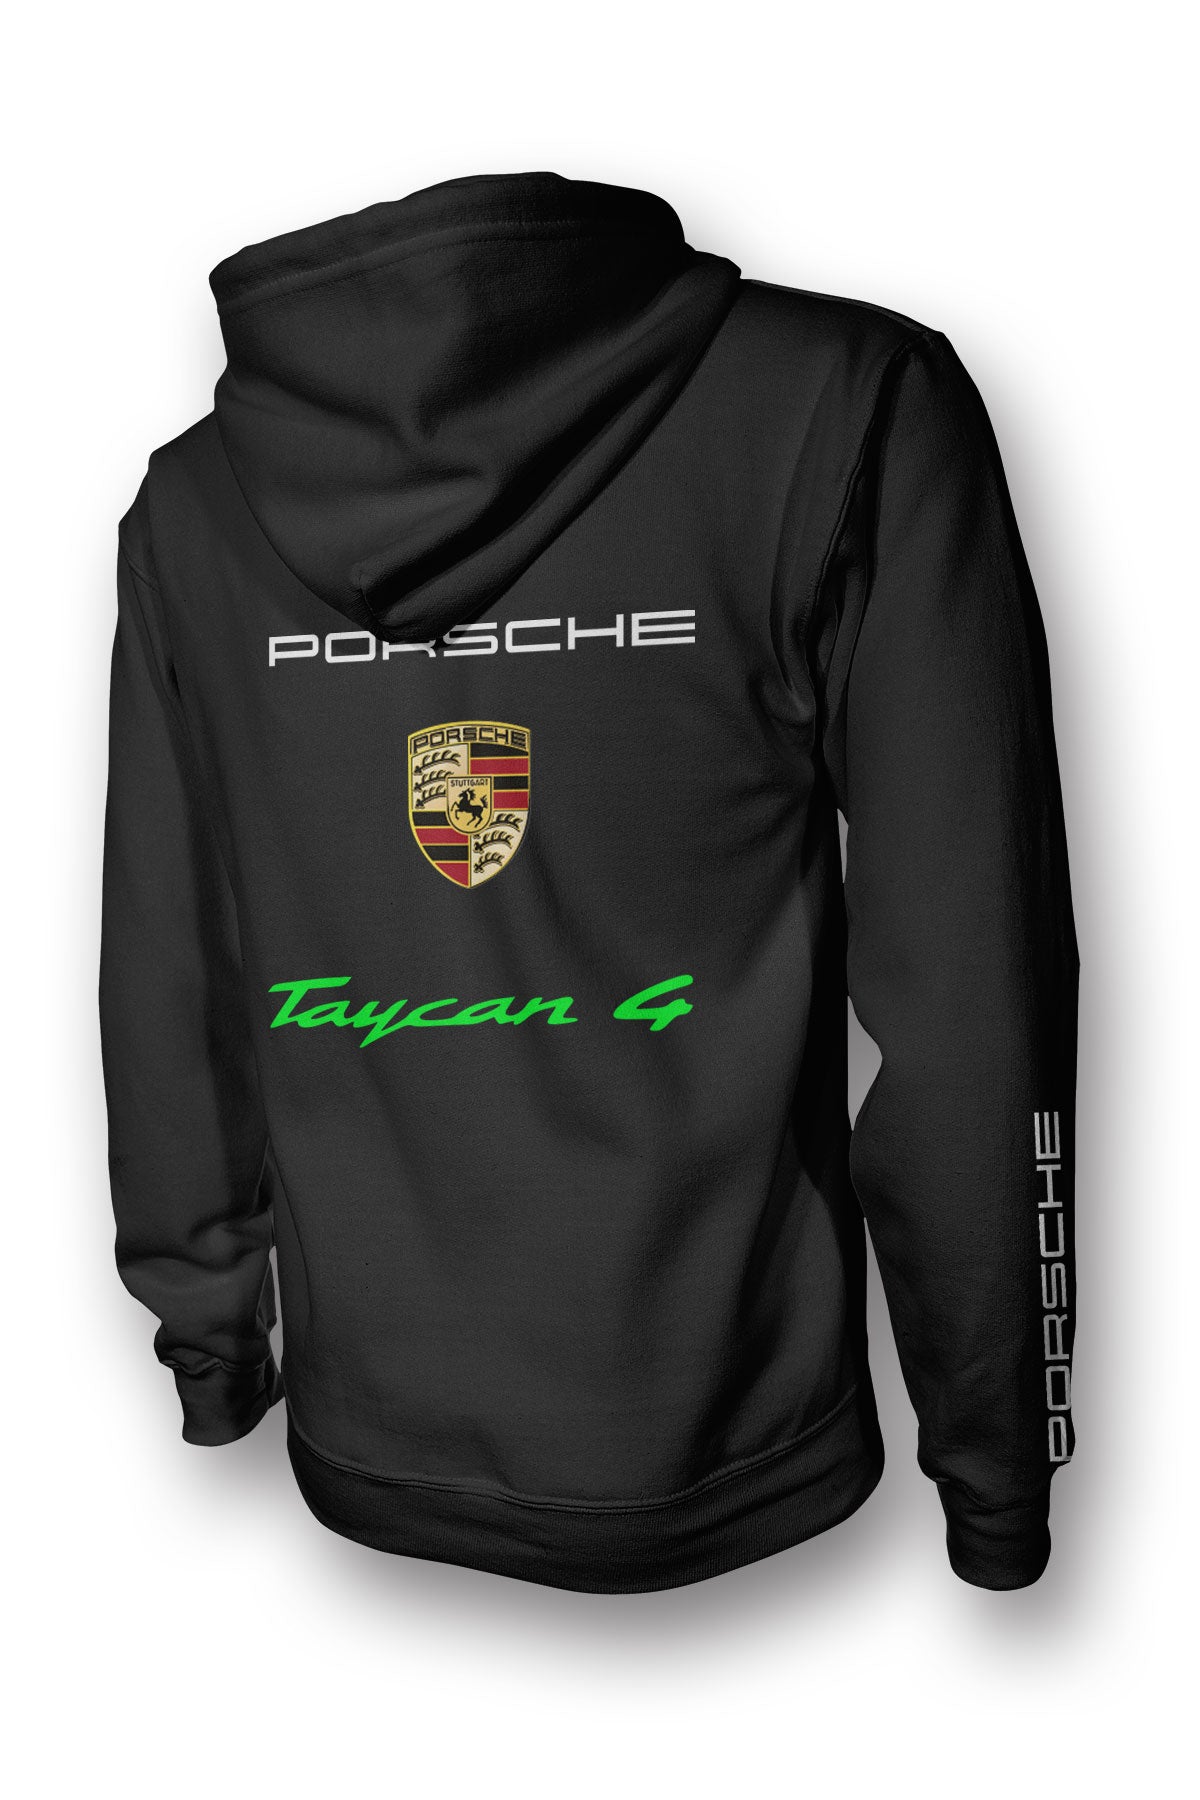 Porsche Taycan 4 Cross Turismo Full Zip Hoodie